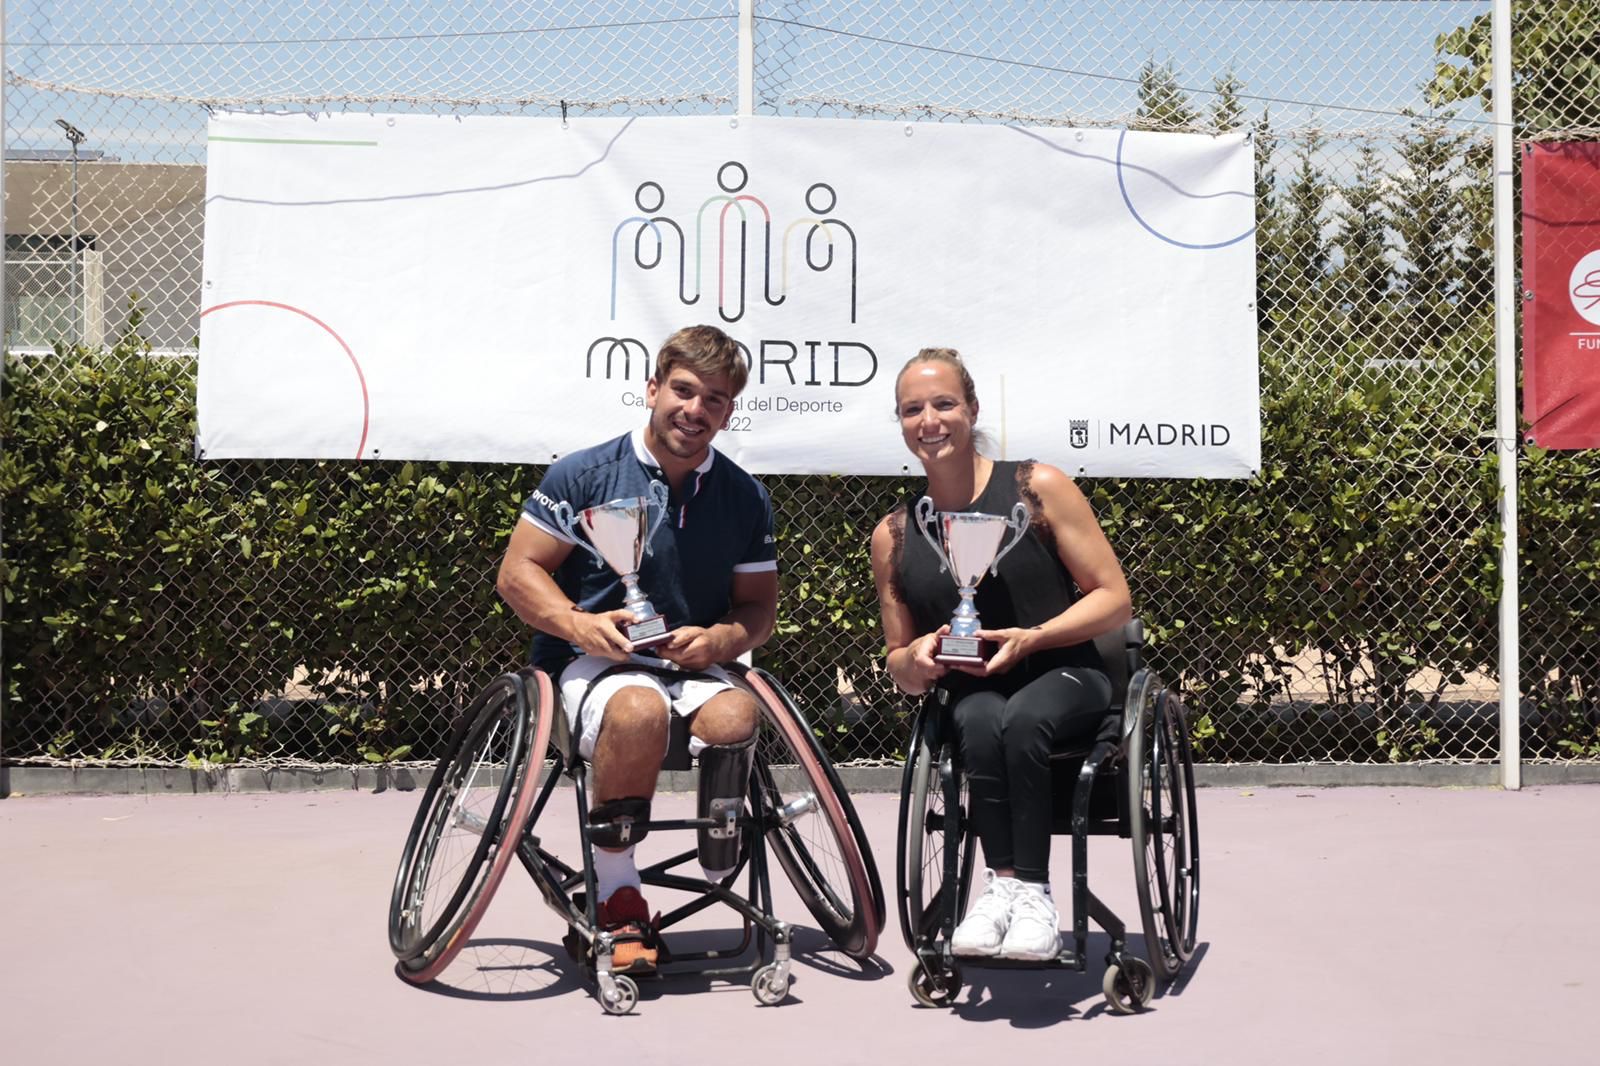 Image for Martin de la Puente y Jiske Griggioen, triunfan en el X ITF Wheelchair Fundación Emilio Sánchez Vicario en La Ciudad de la Raqueta.